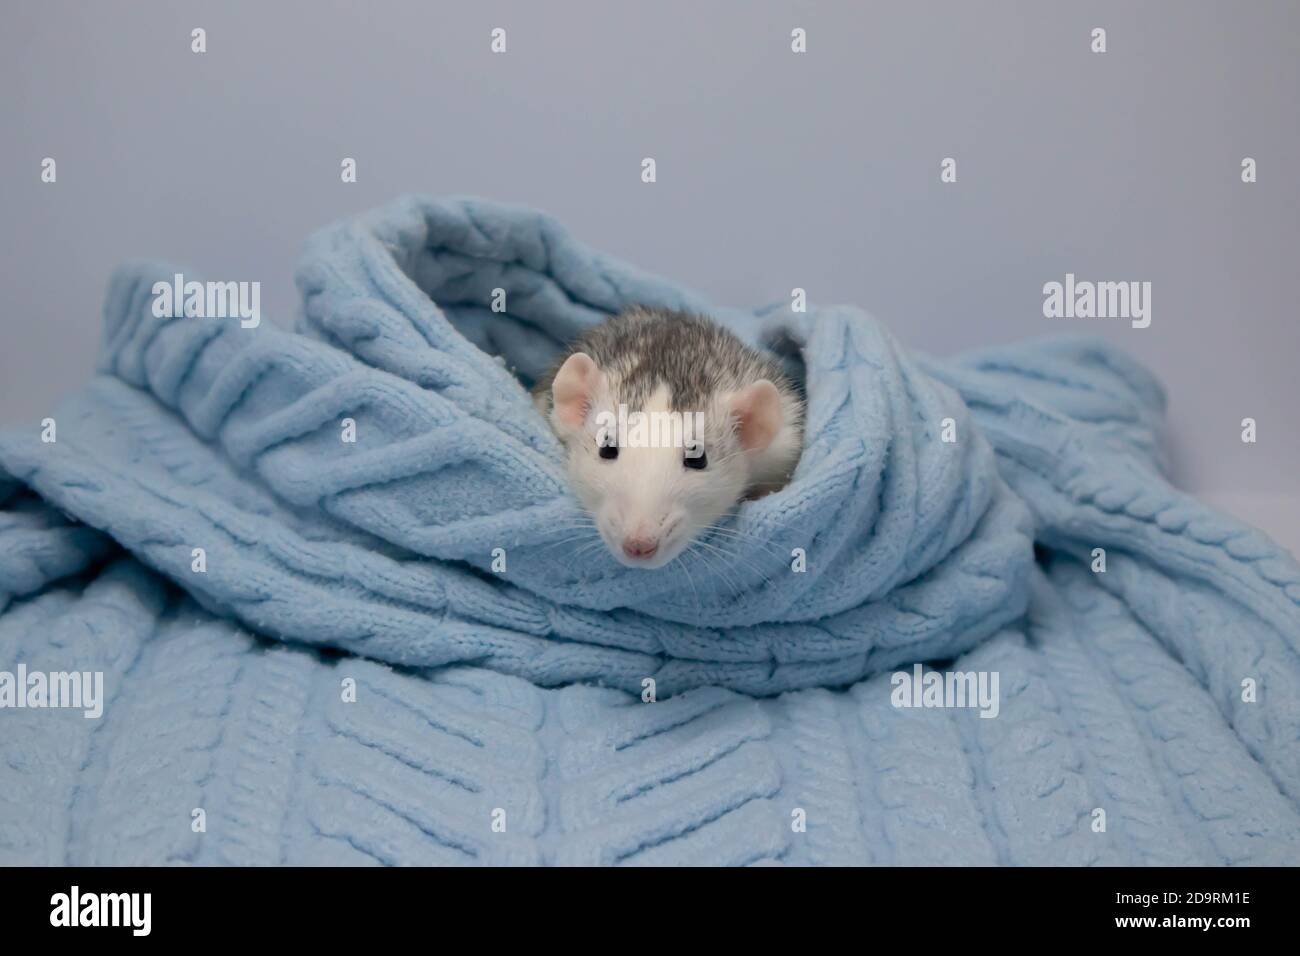 Eine niedliche Ratte sitzt in einer weichen blauen Strickdecke. Nahaufnahme eines Nagetieres. Stockfoto